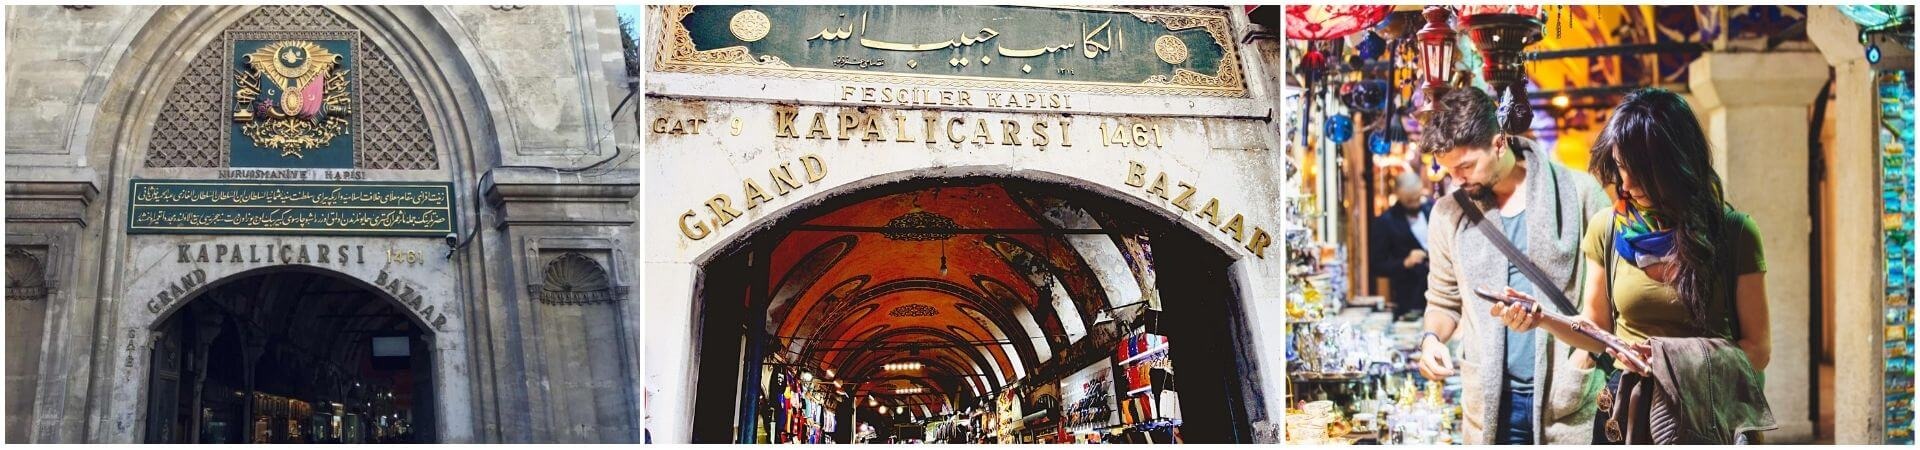 جولة إرشادية في البازار الكبير اسطنبول